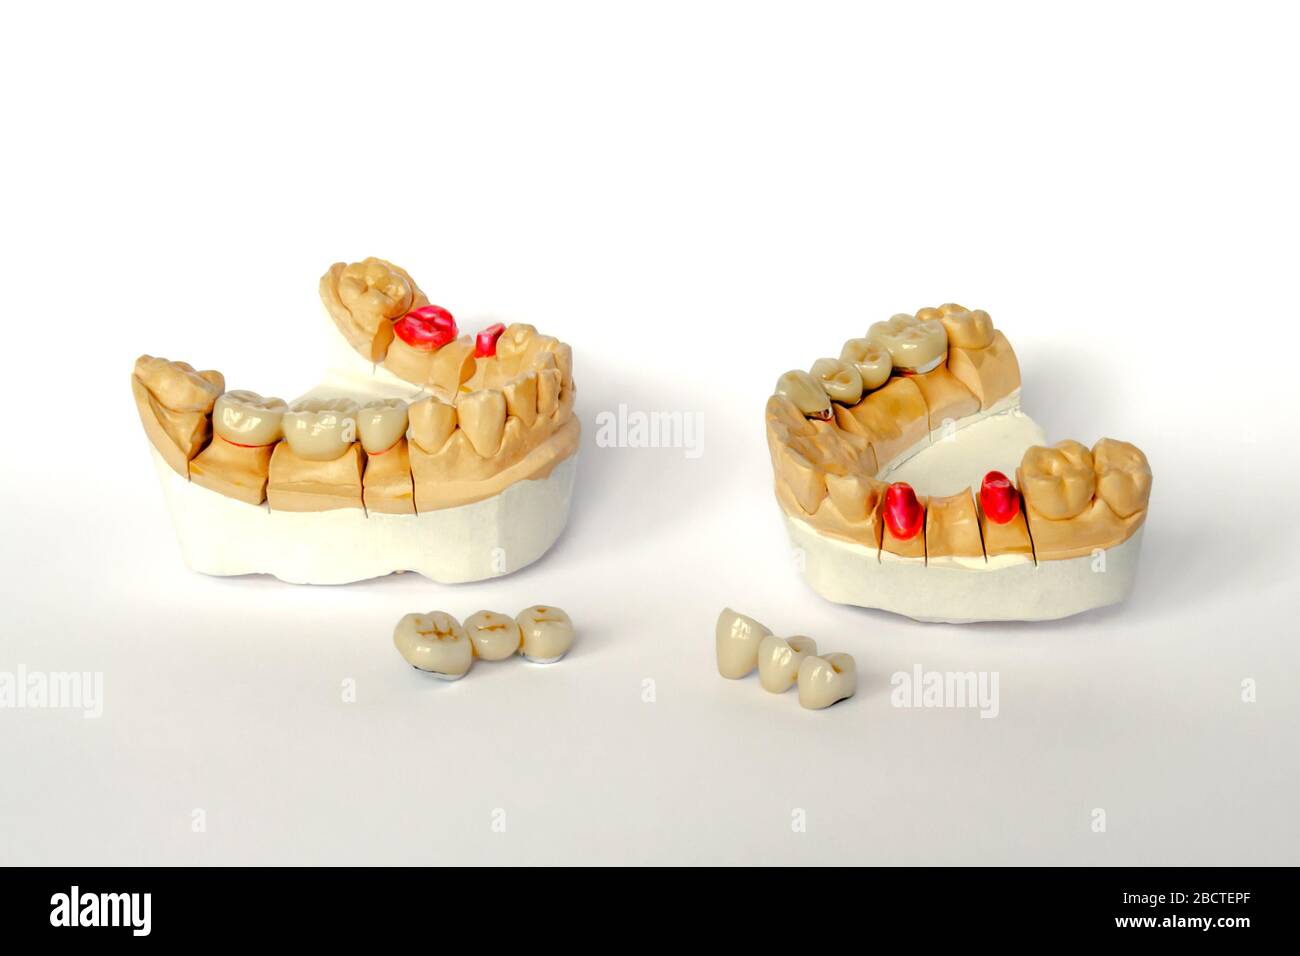 Konzept der orthopädischen Zahnmedizin. Zahnprothetik mit keramischen Kronen und Brücken. Zahnbrücken auf den hinteren Zähnen. Ästhetische Prothetik. gyp Stockfoto